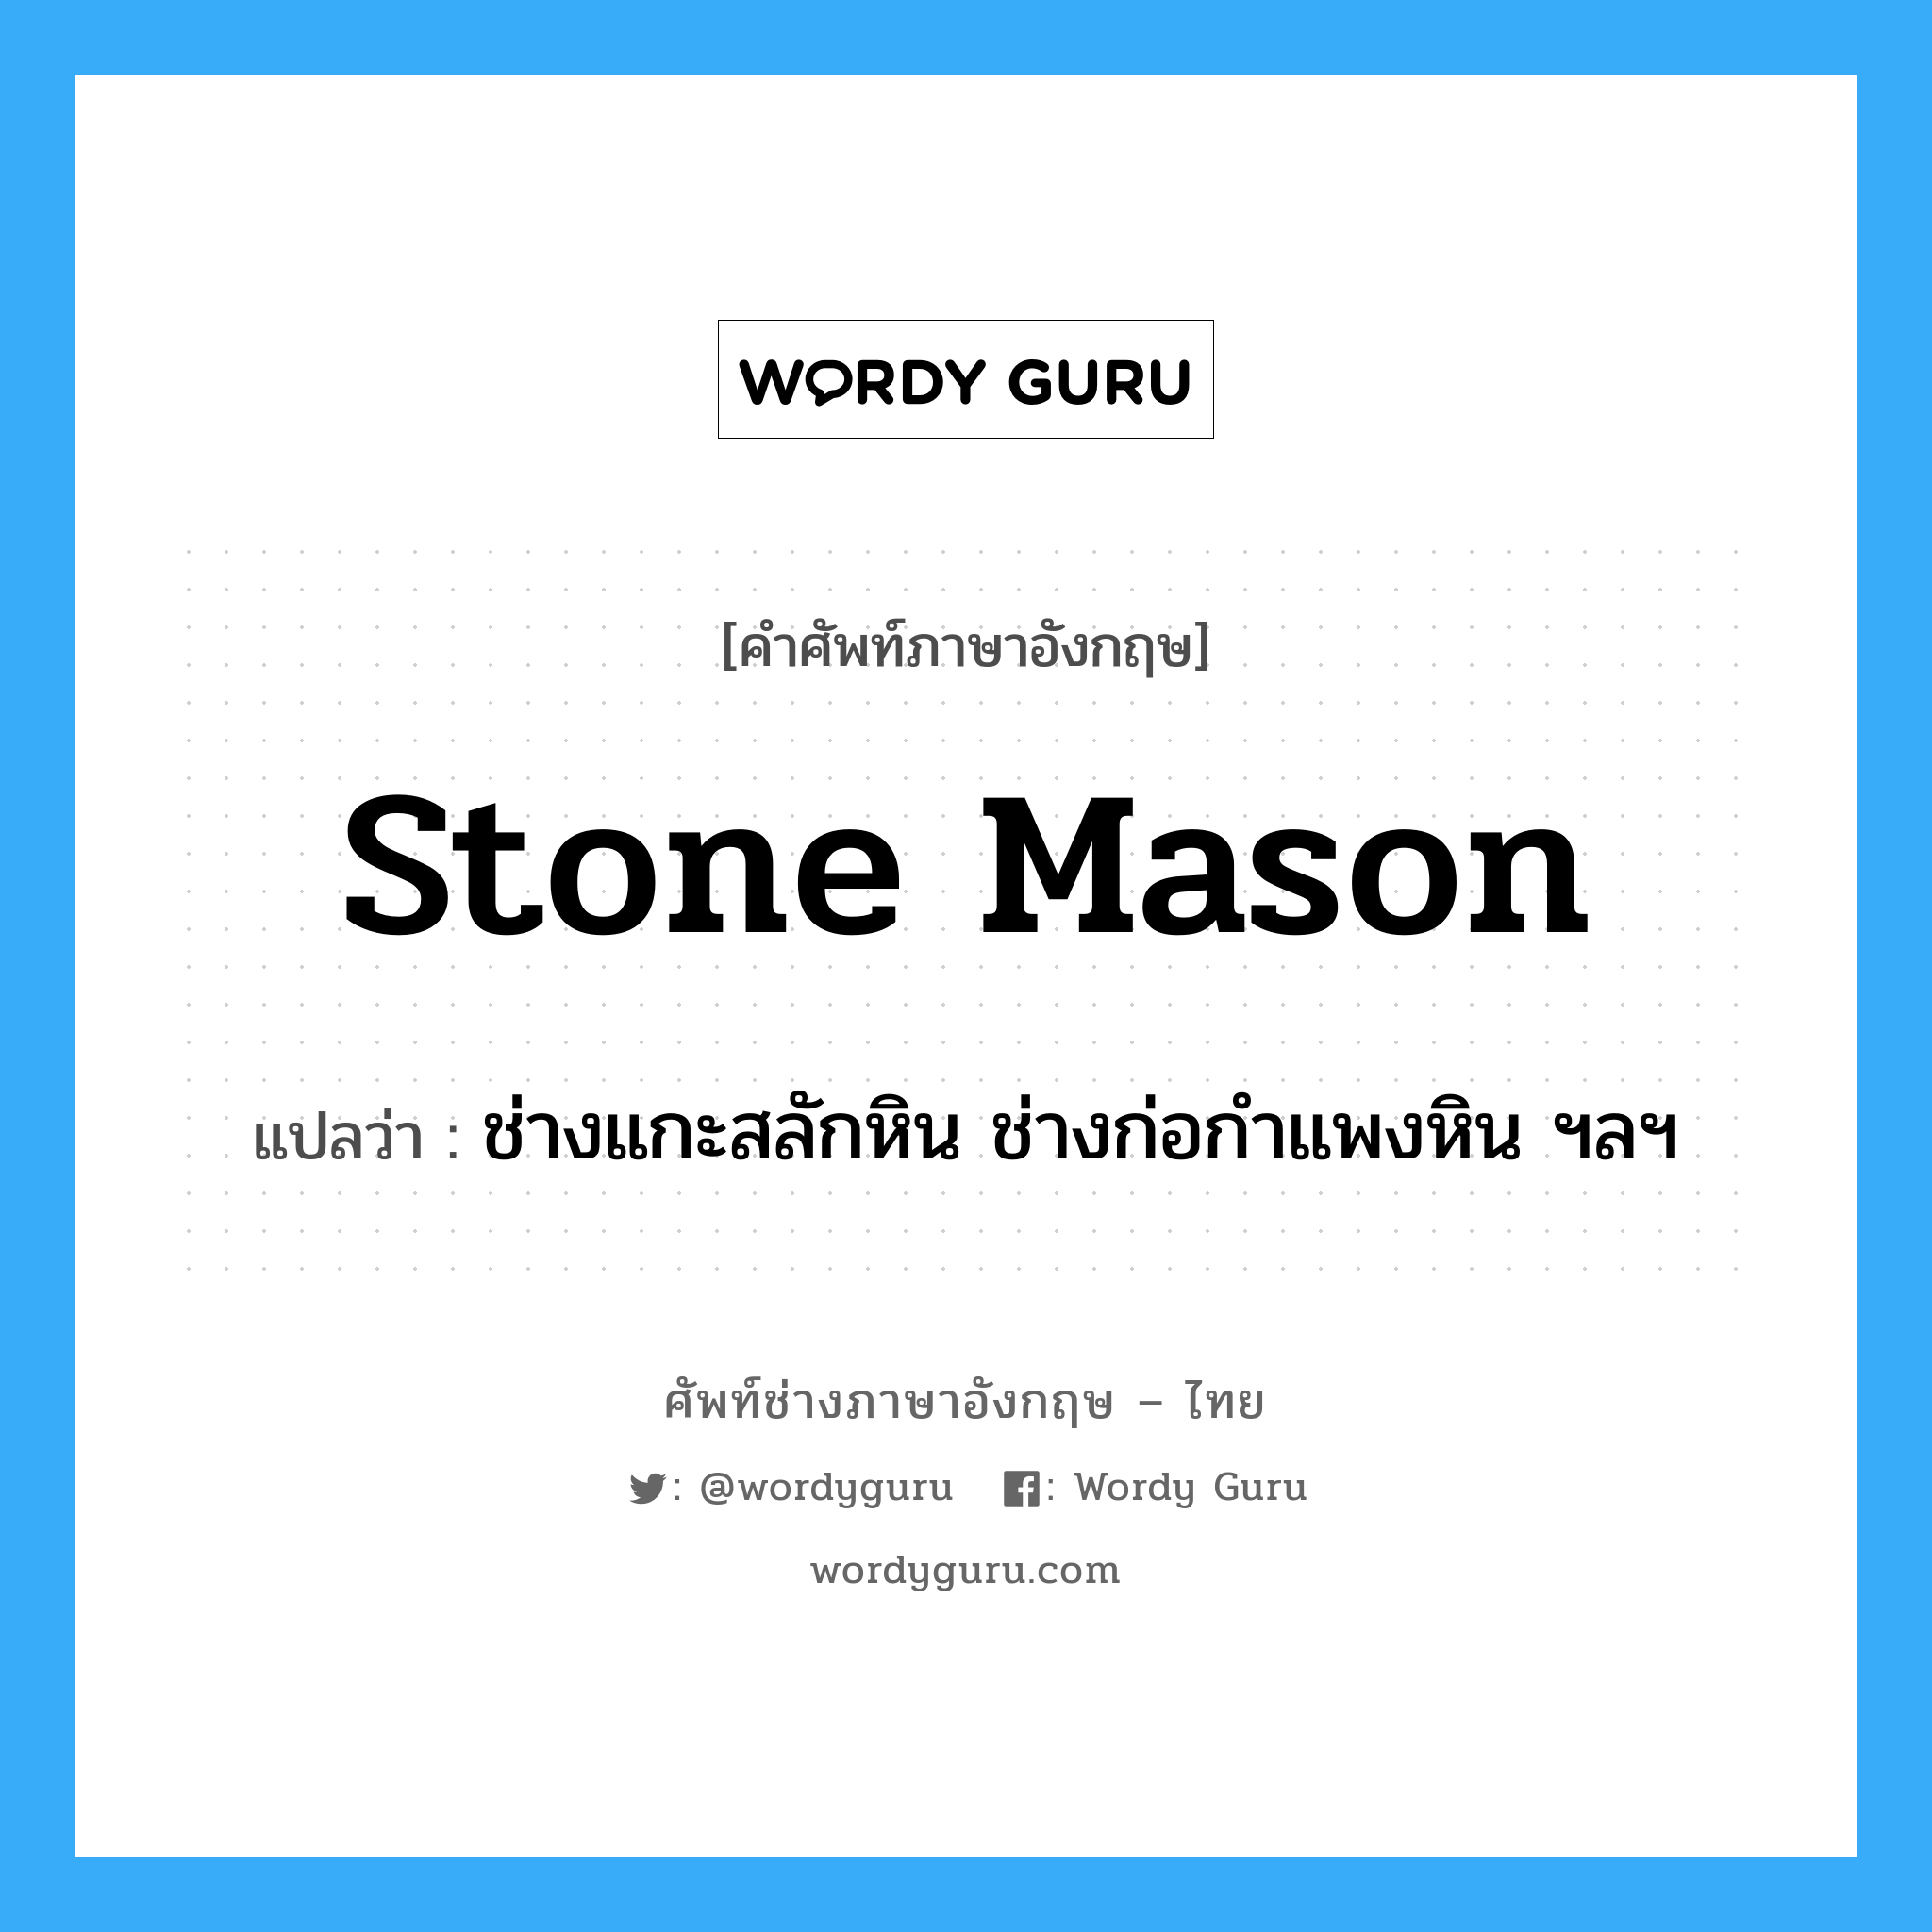 ช่างแกะสลักหิน ช่างก่อกำแพงหิน ฯลฯ ภาษาอังกฤษ?, คำศัพท์ช่างภาษาอังกฤษ - ไทย ช่างแกะสลักหิน ช่างก่อกำแพงหิน ฯลฯ คำศัพท์ภาษาอังกฤษ ช่างแกะสลักหิน ช่างก่อกำแพงหิน ฯลฯ แปลว่า stone mason